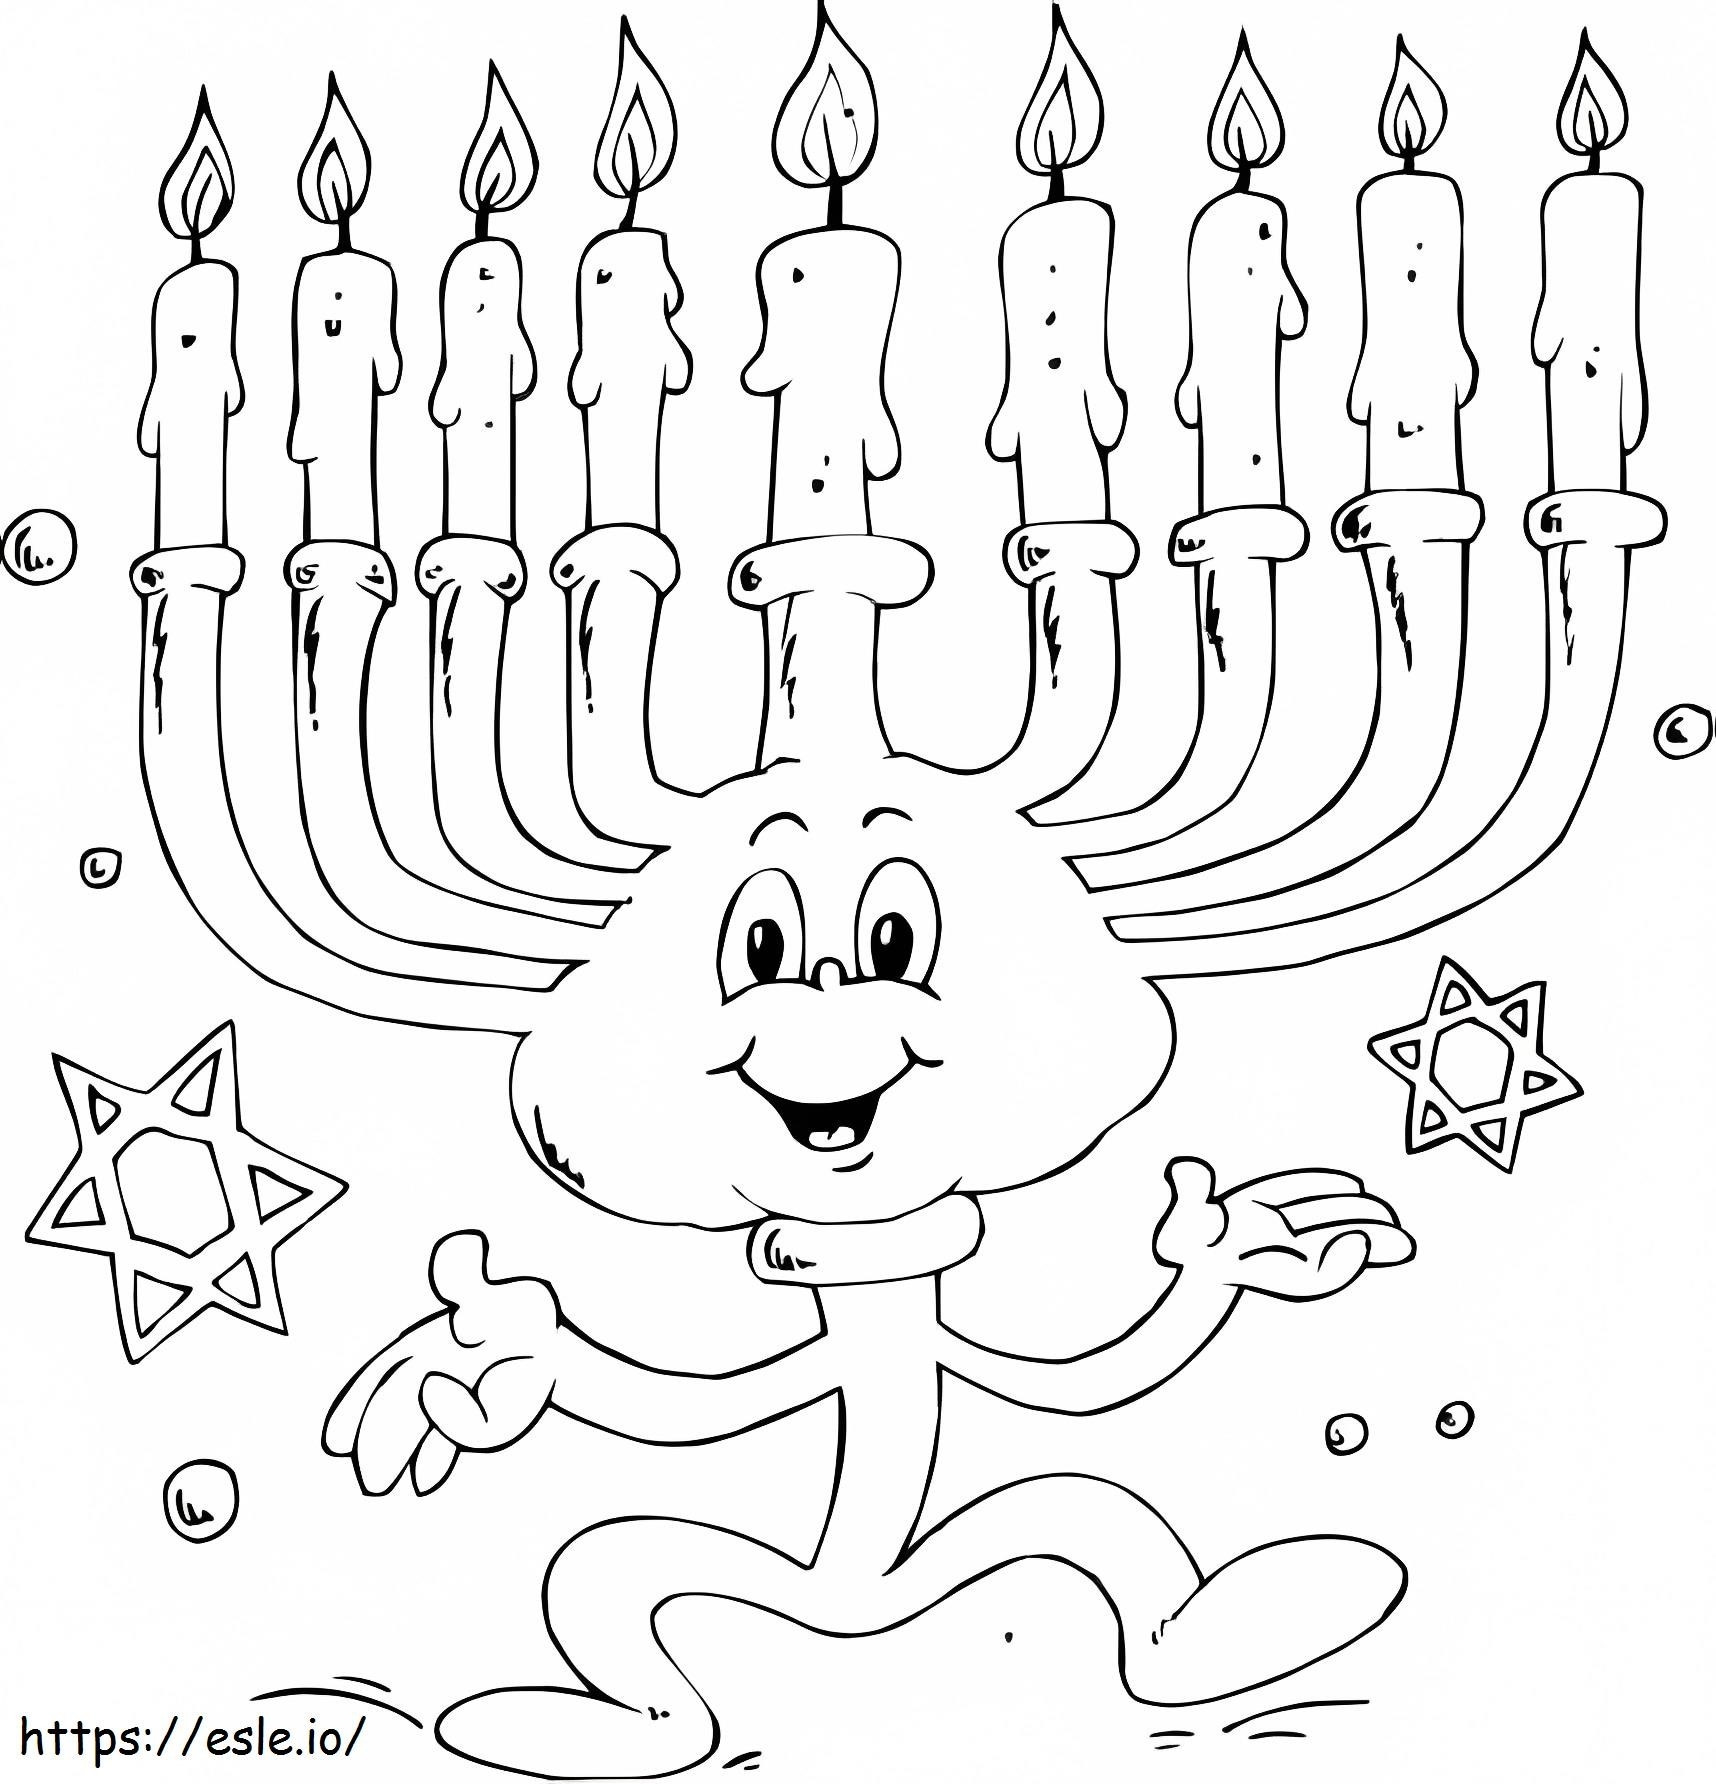 Menorá de Hanukkah de dibujos animados para colorear